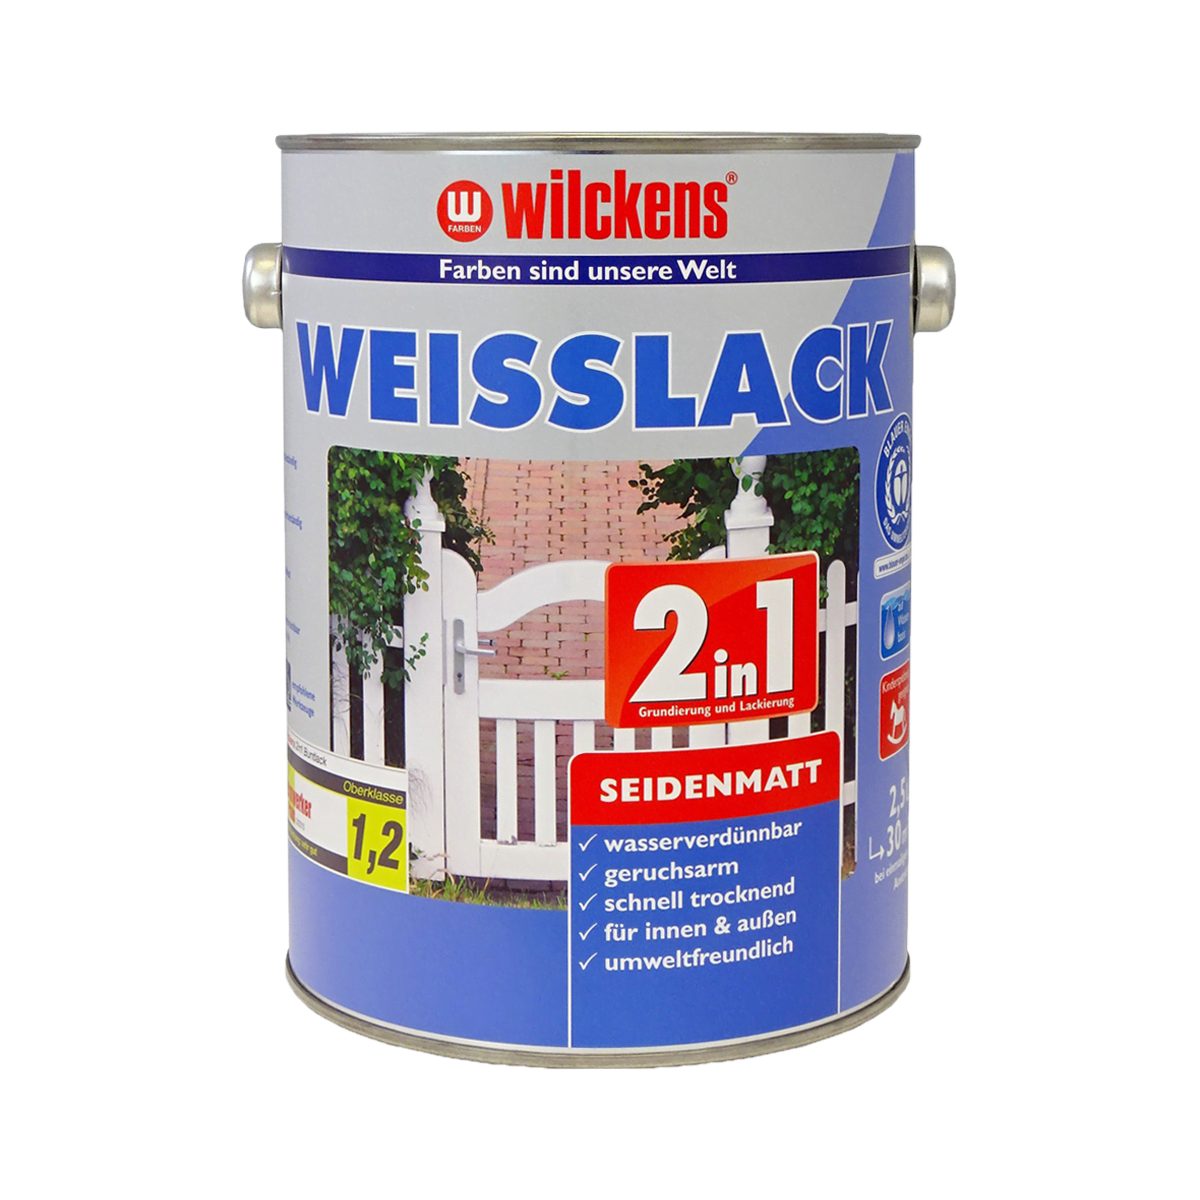 Wilckens Farben Weißlack 2in1 2,5 Weisslack Liter Seidenmatt